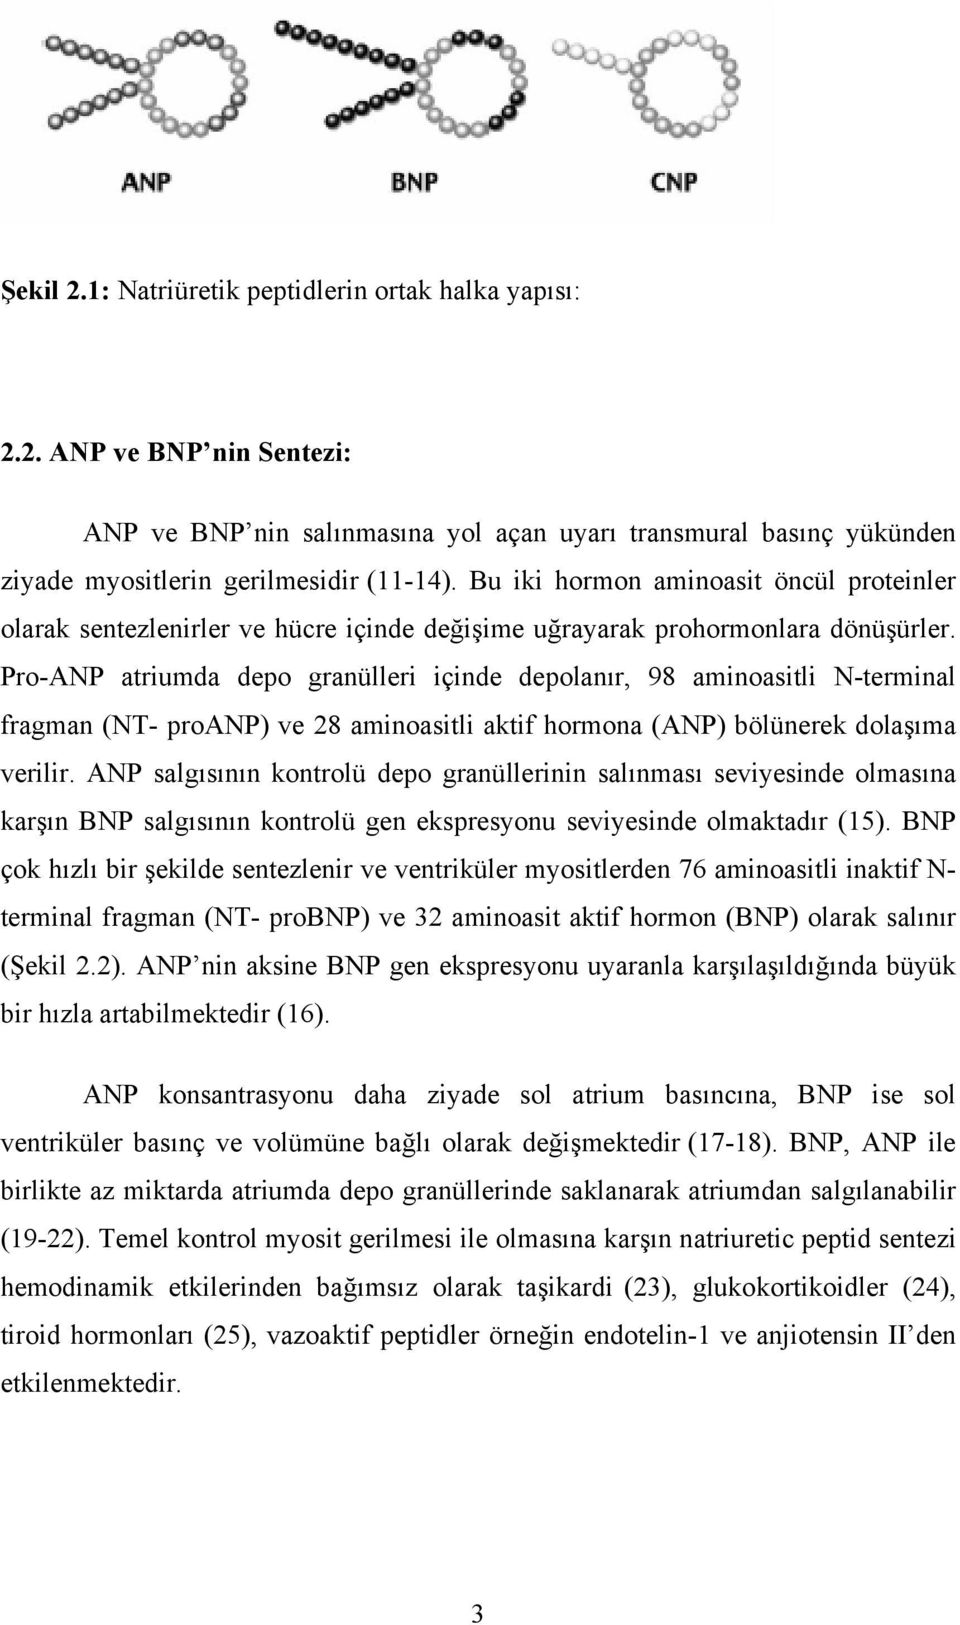 Pro-ANP atriumda depo granülleri içinde depolanır, 98 aminoasitli N-terminal fragman (NT- proanp) ve 28 aminoasitli aktif hormona (ANP) bölünerek dolaşıma verilir.